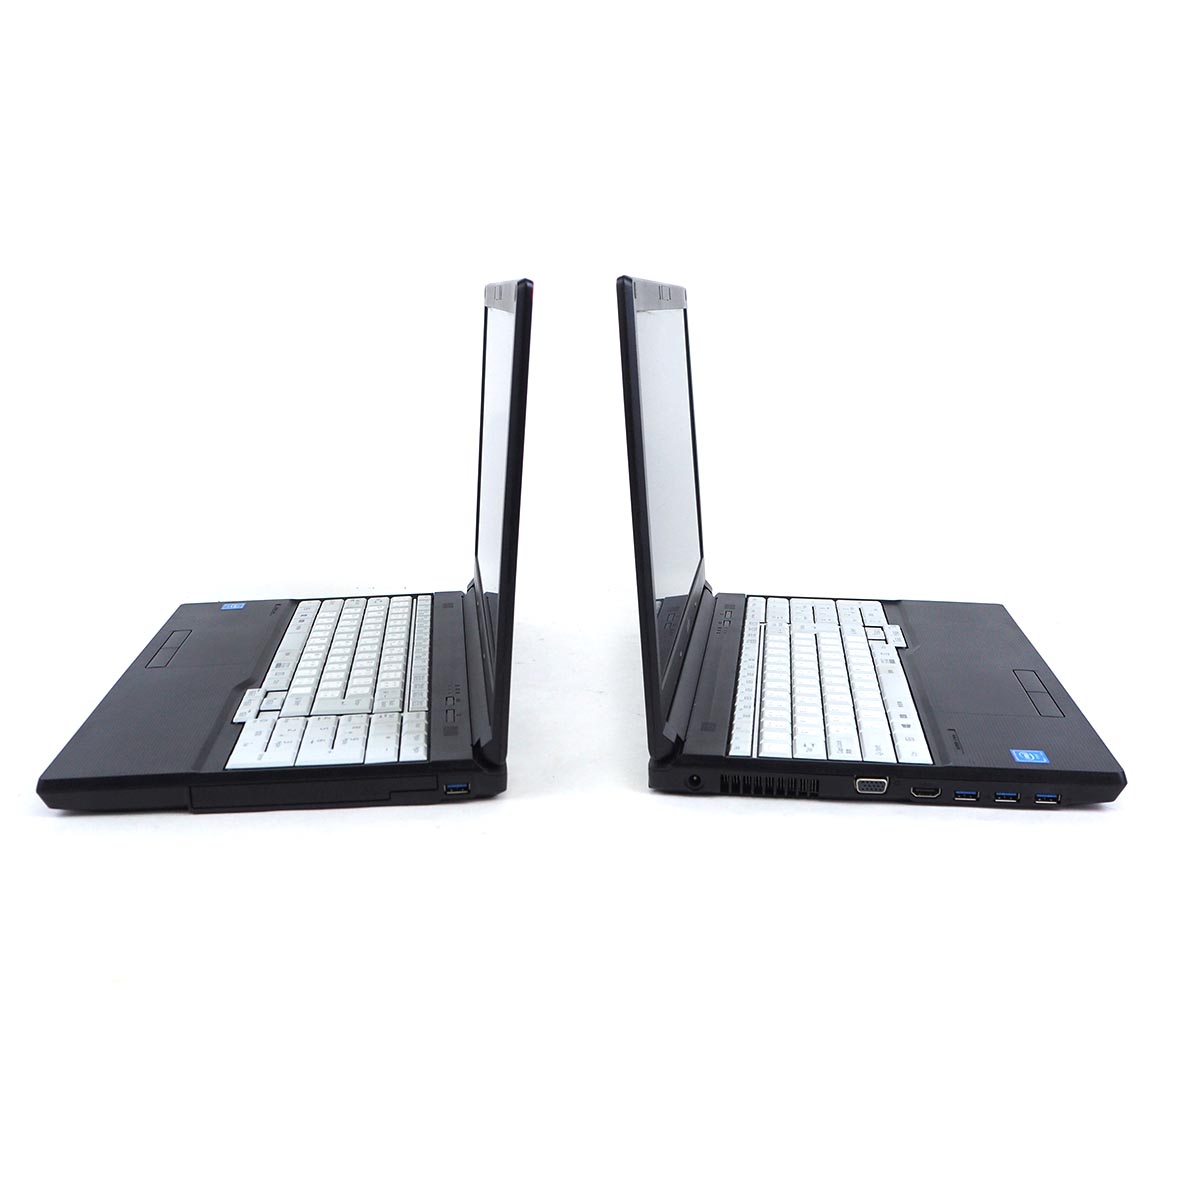 รูปภาพเพิ่มเติมเกี่ยวกับ โน๊ตบุ๊ค Fu LifeBook A577/R Celeron Gen7 / RAM 4-8GB (DDR4) HDD/SSD หน้าจอ 15.6 นิ้ว คีย์แยก Wifi-Blth ในตัว Refhed laptop used notebook คอมพิวเตอร์ 2022 มีประกัน By Totalsol